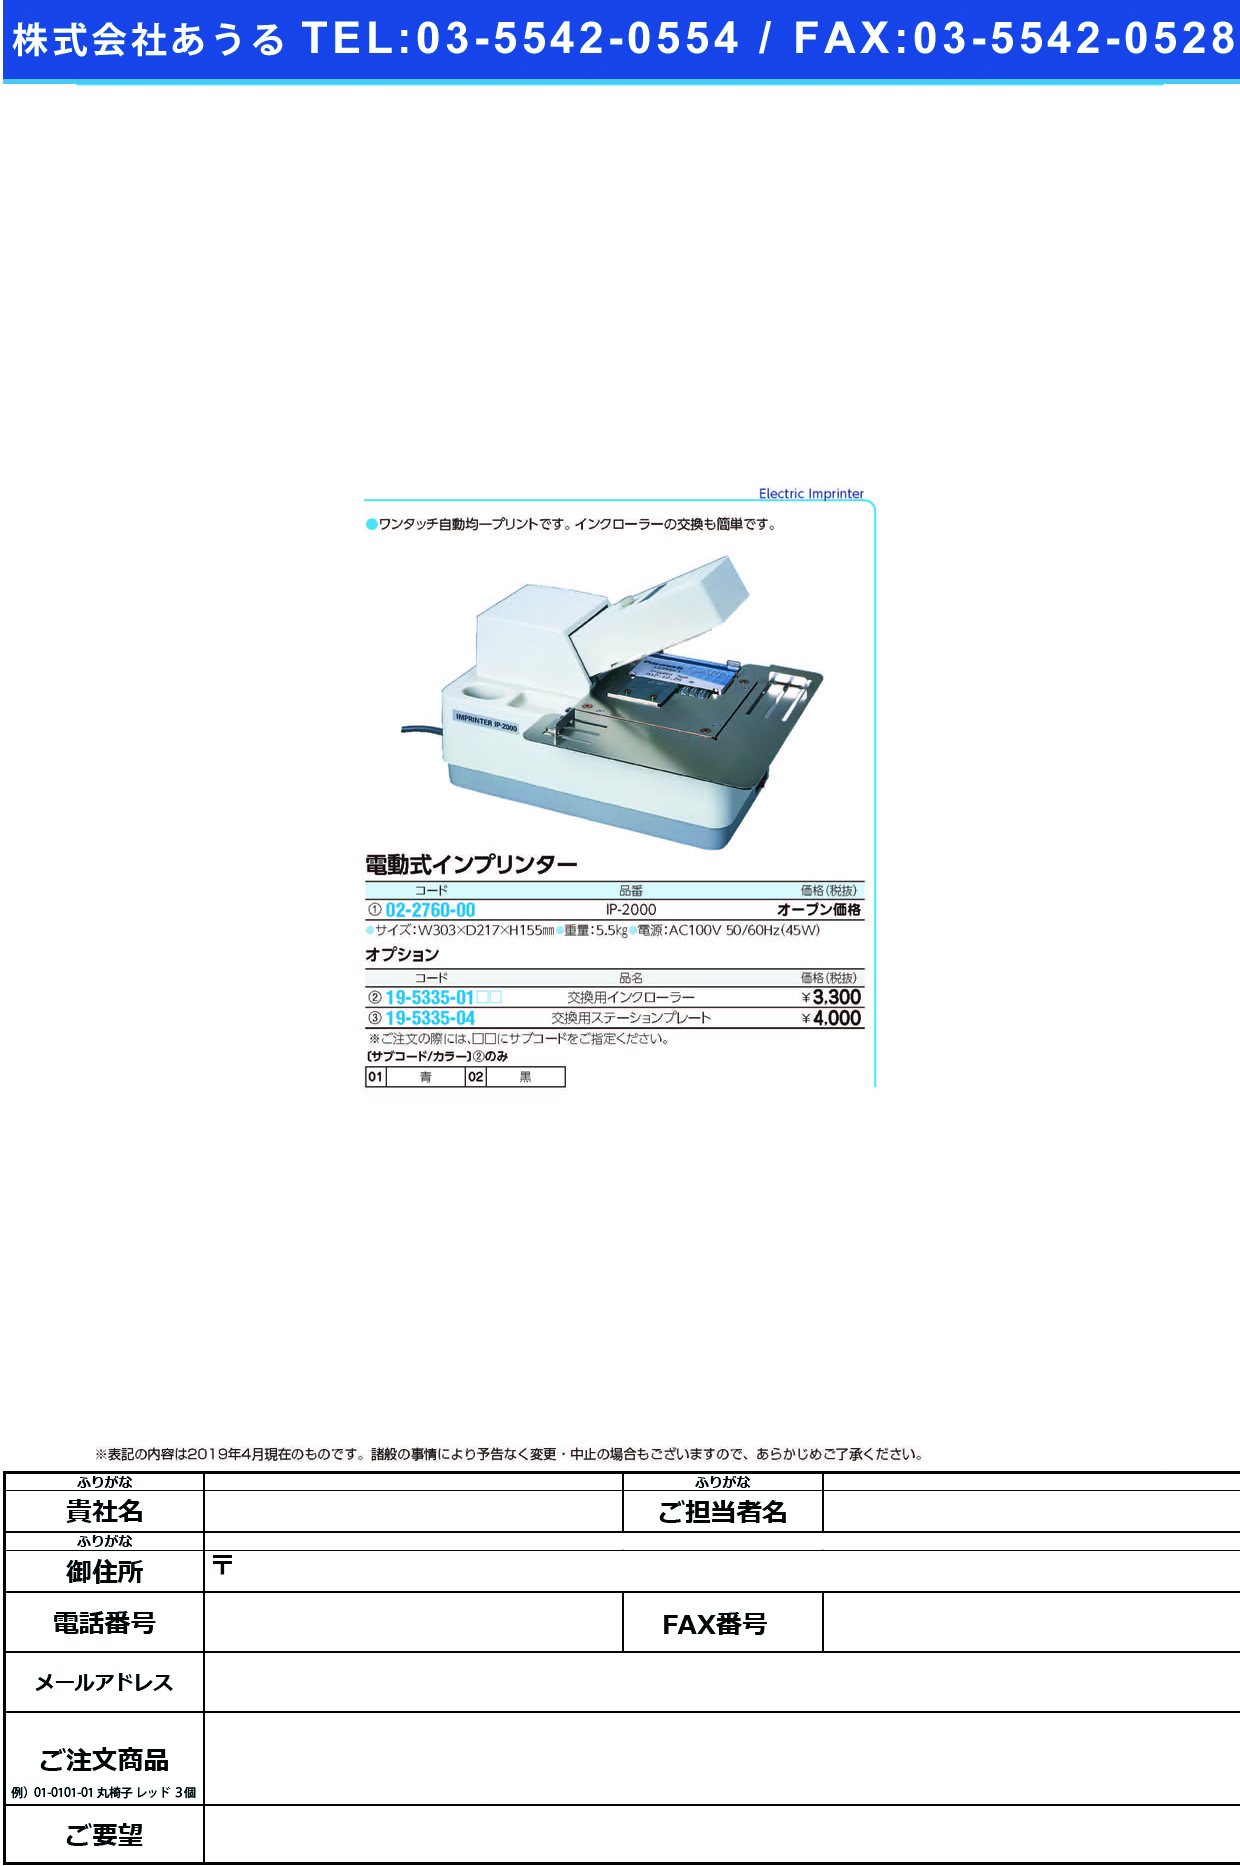 (02-2760-00)電動式インプリンター IP-2000 ｲﾝﾌﾟﾘﾝﾀｰ【1台単位】【2019年カタログ商品】